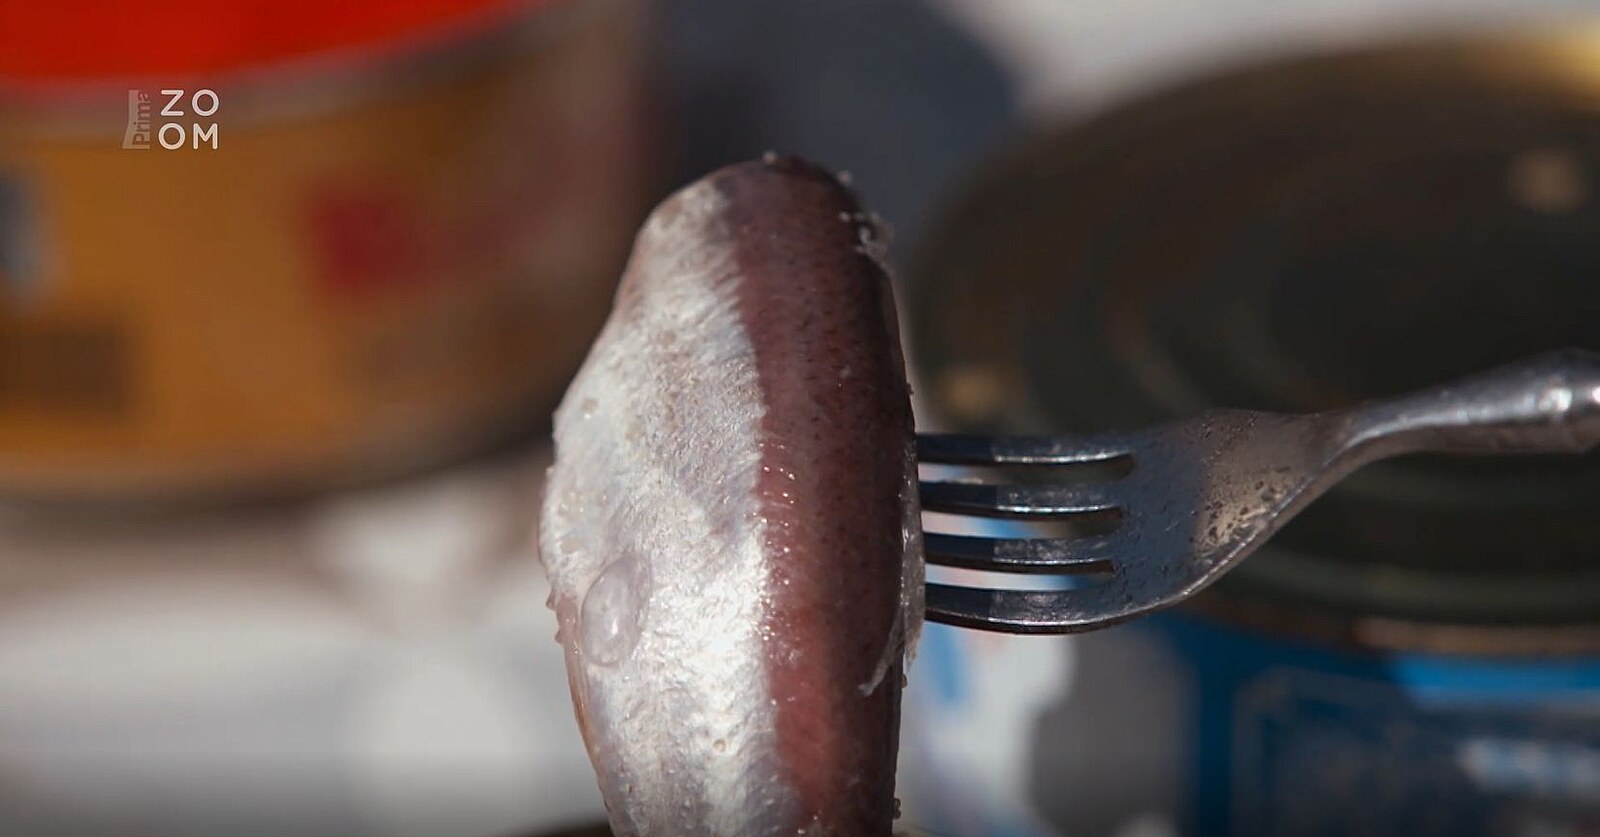 VIDEO: Nejsmradlavější jídlo na světě. To jsou švédské fermentované makrely  - iDNES.cz